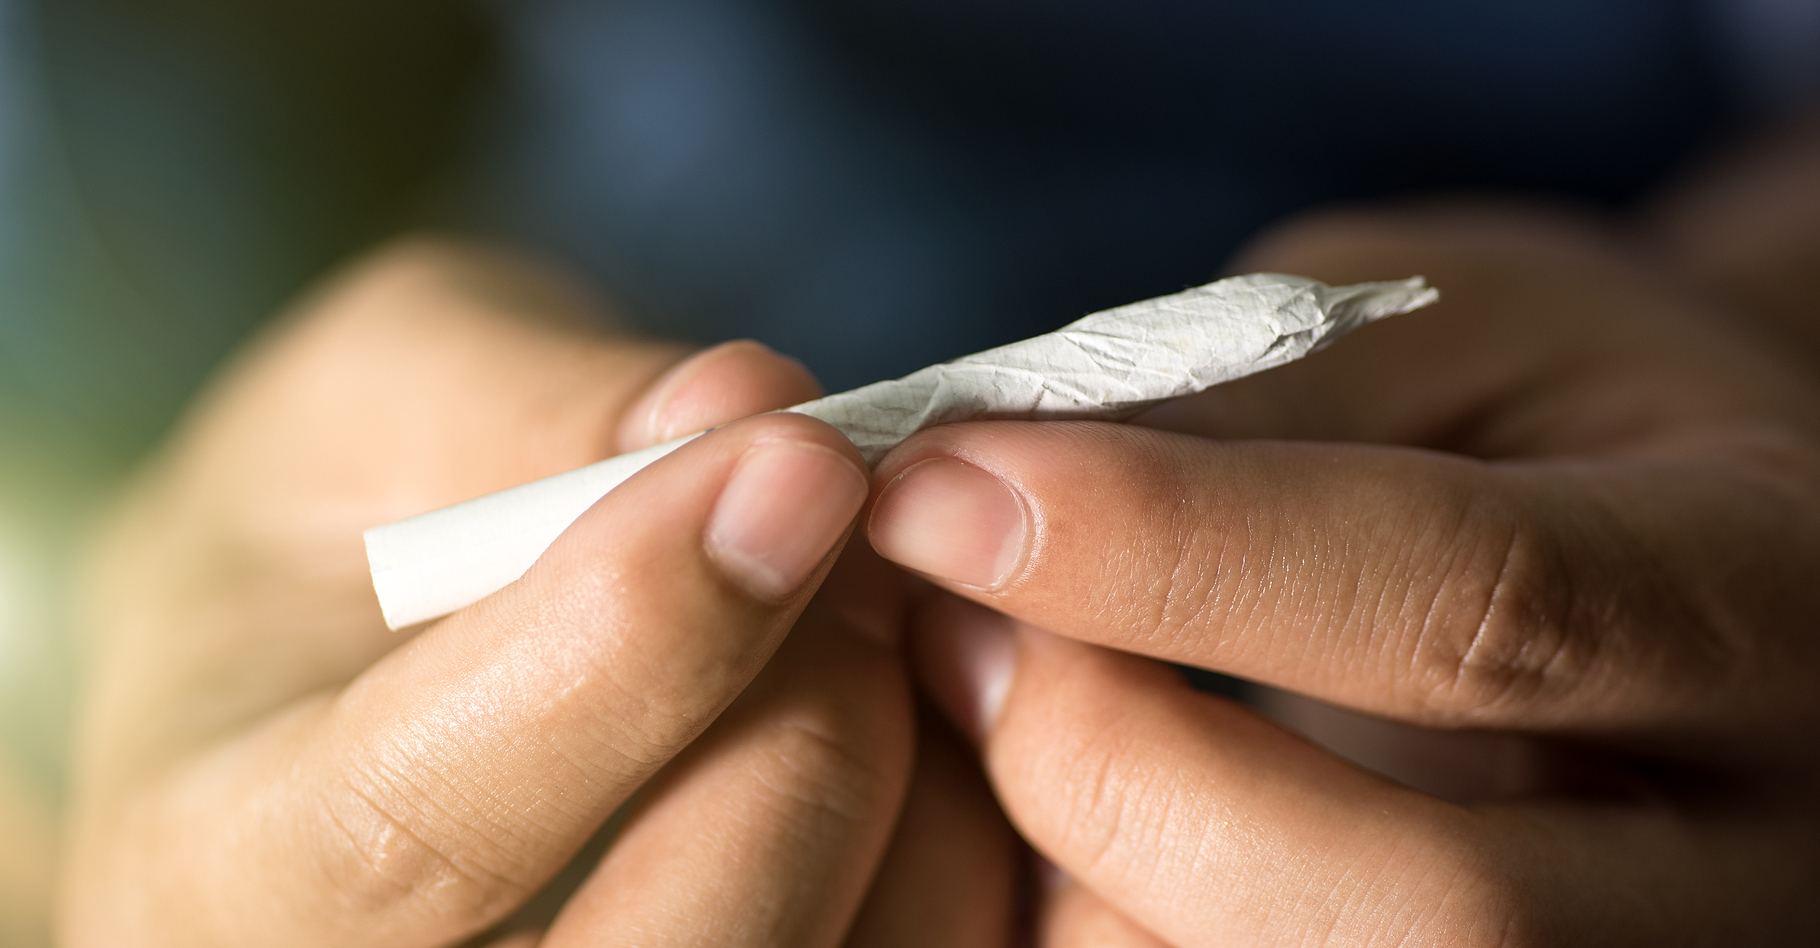 Le cannabis est une drogue illégale dans la plupart des pays, mais reste néanmoins très consommé. Un rapport de l'ONU de 2008 estimait à 166 millions les utilisateurs durant l'année 2006. Quelques-uns d'entre eux auraient alors pu souffrir de gynécomastie. © Nhungboon, Shutterstock